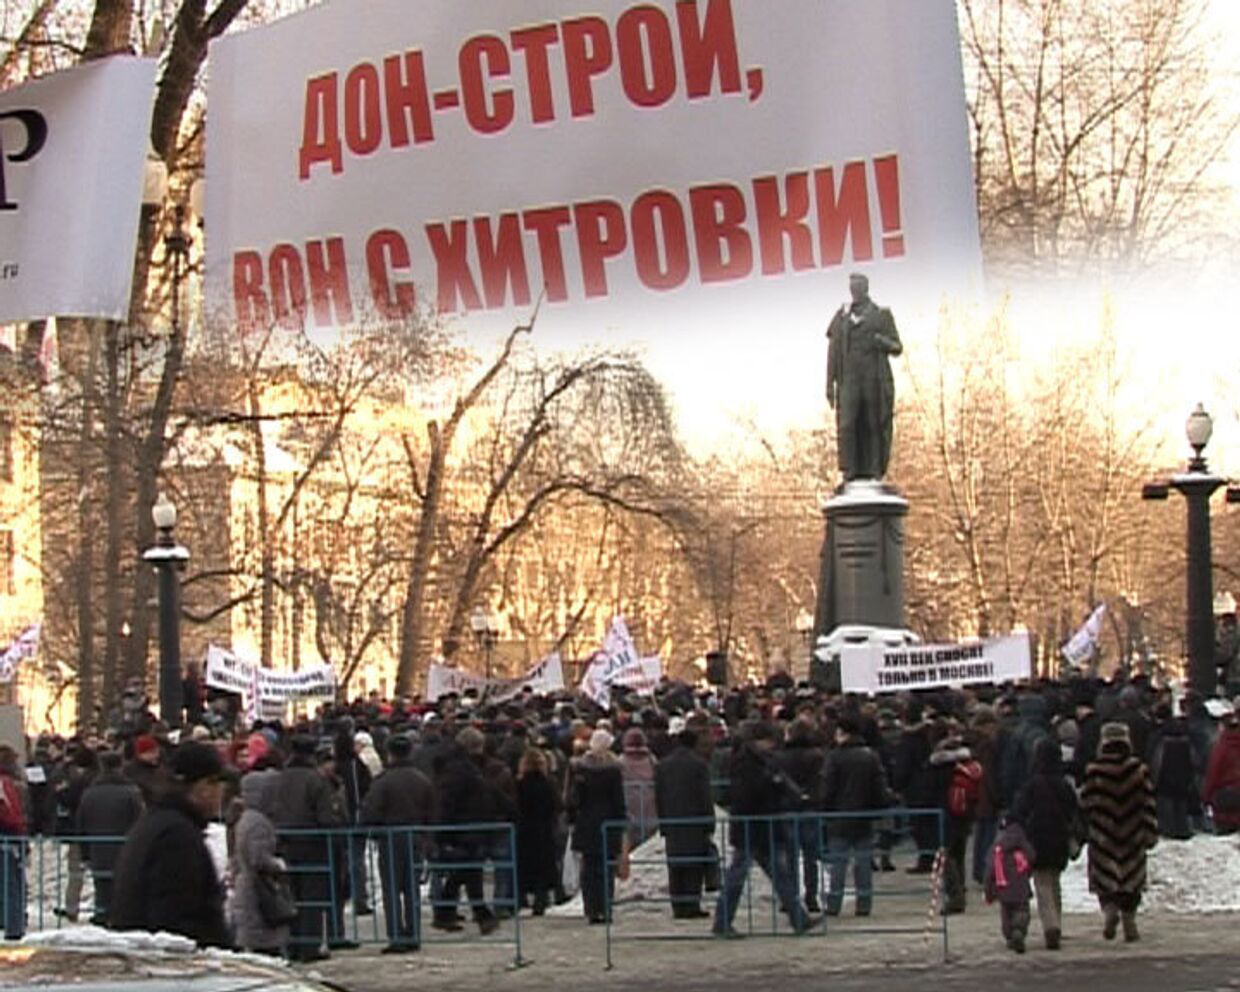  Архнадзор выступил в защиту Хитровской площадим